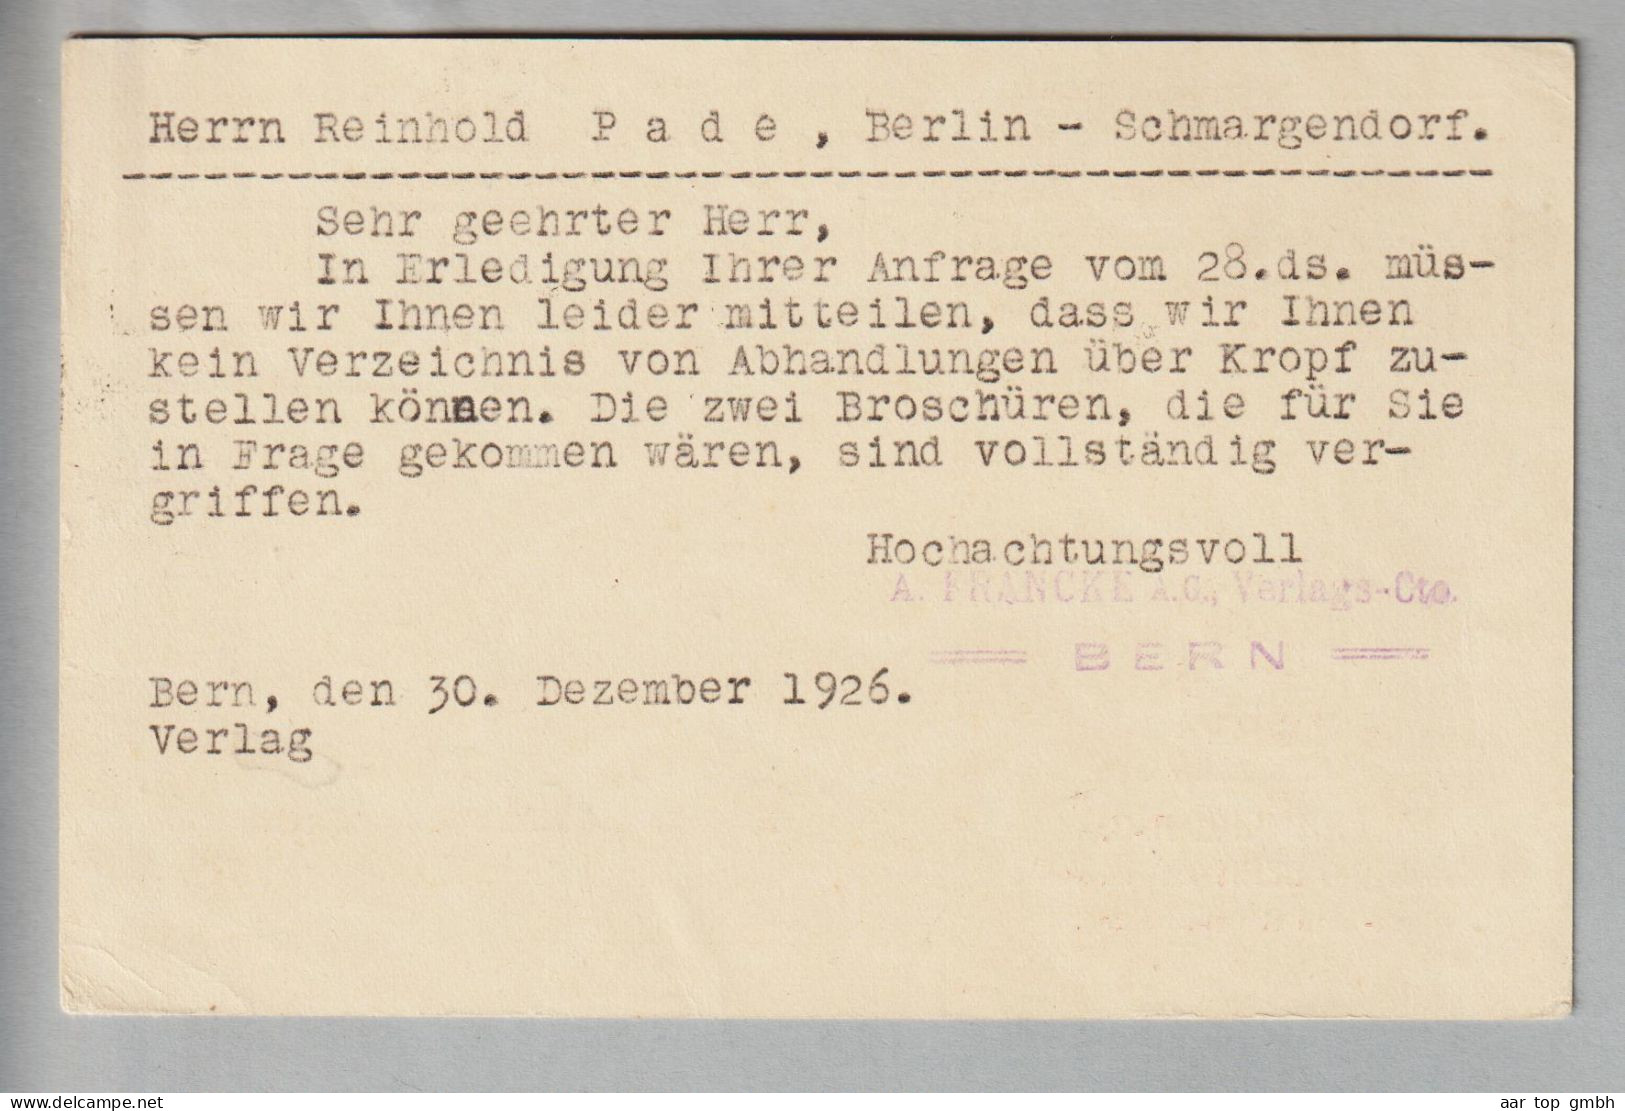 CH Ganzsache Bildpostkarte 20Rp. 1926-12-30 Bern1 Mit Privatzudruck A.Francke AG - Entiers Postaux